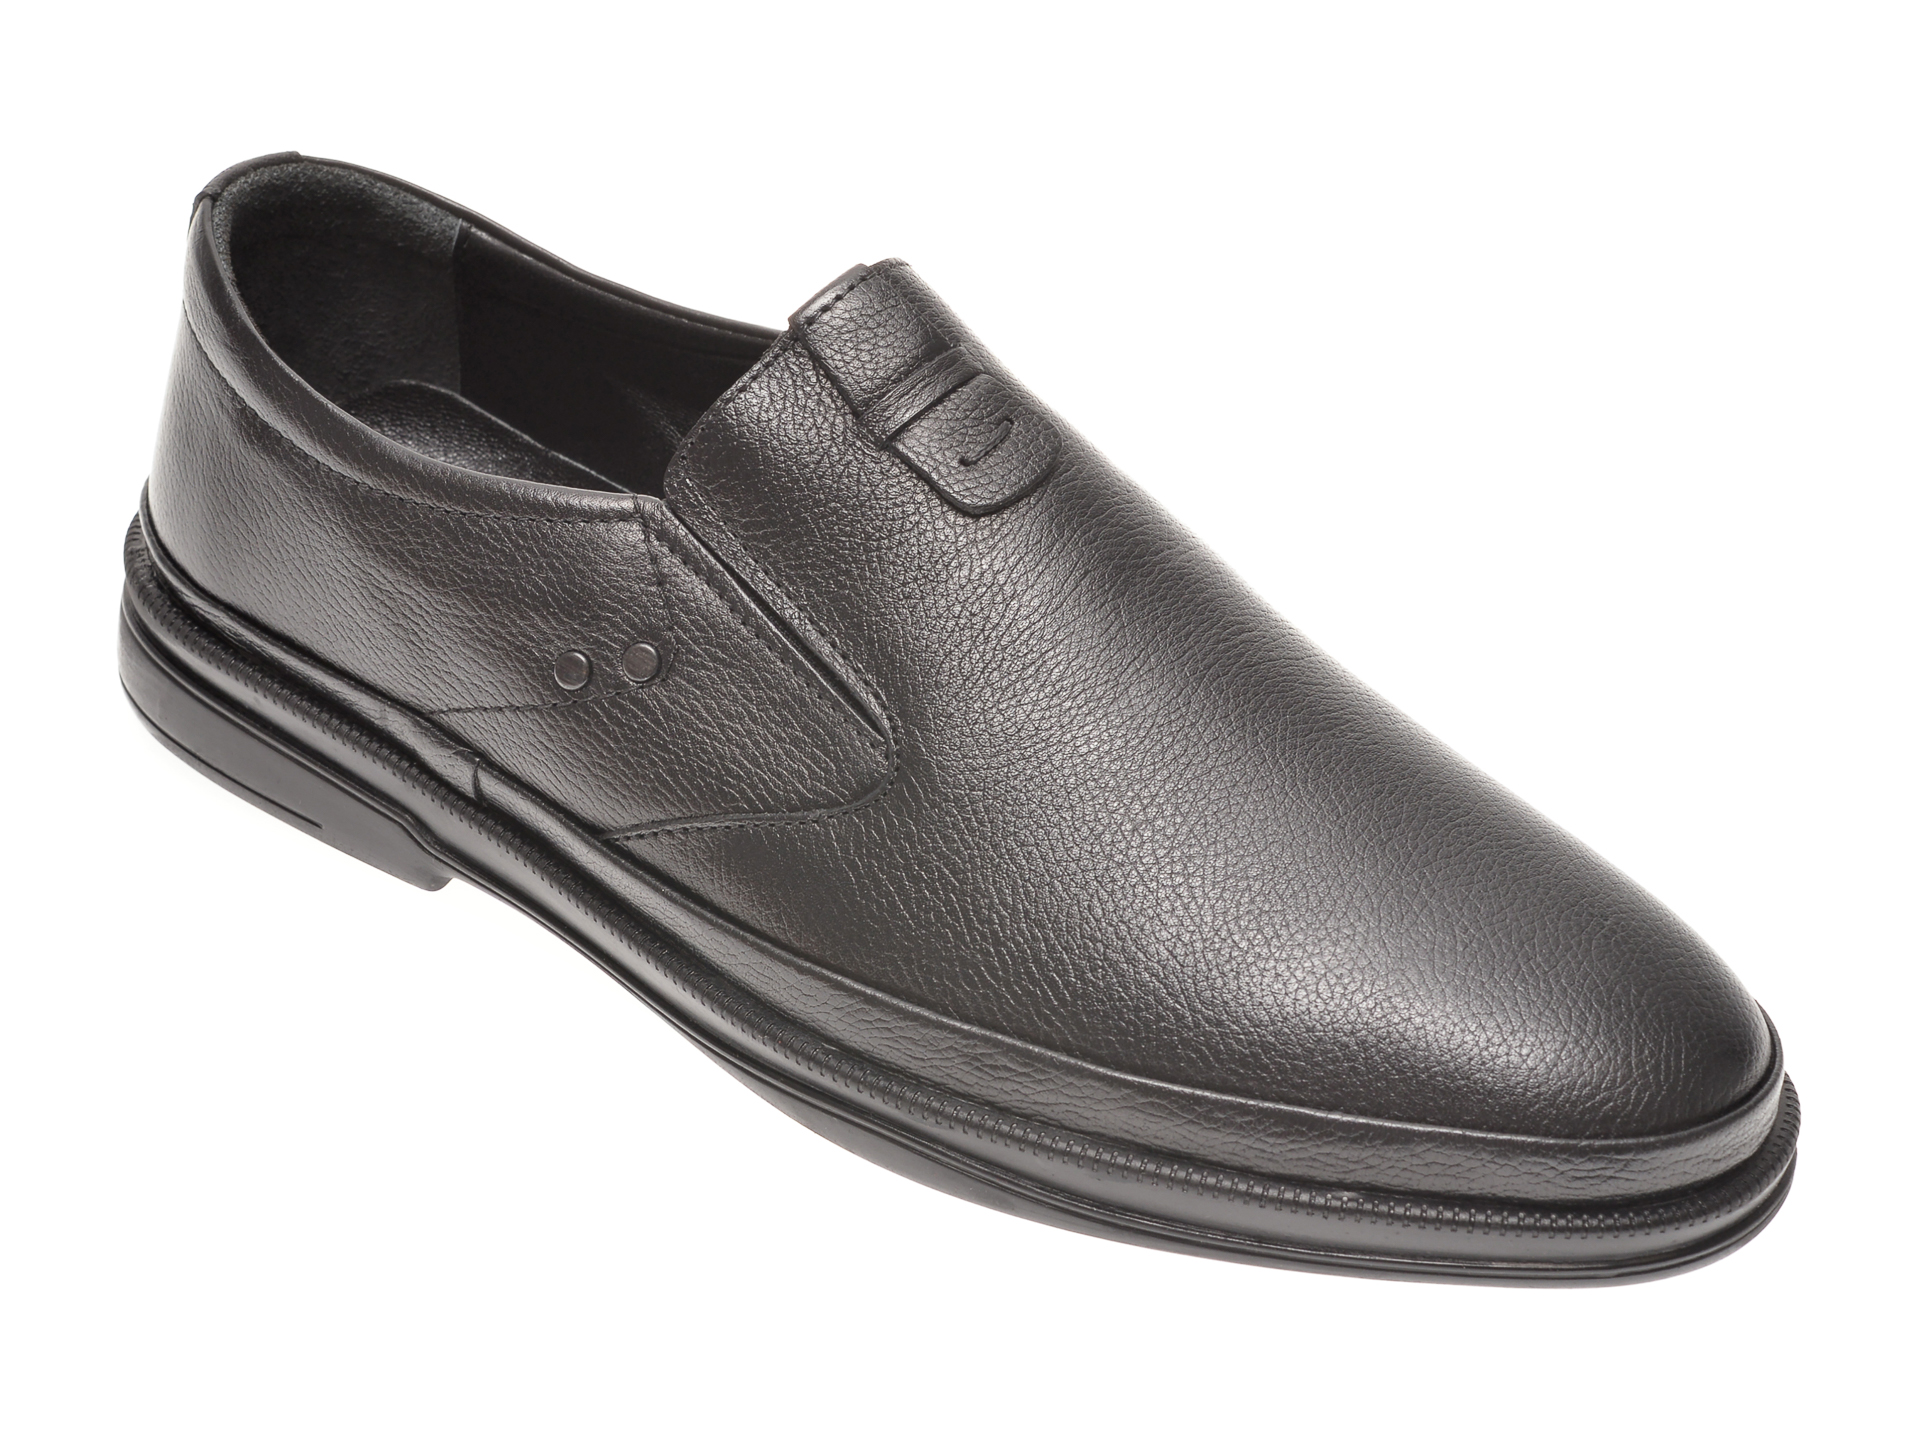 Pantofi OTTER negri, 66401, din piele naturala Otter poza reduceri 2021